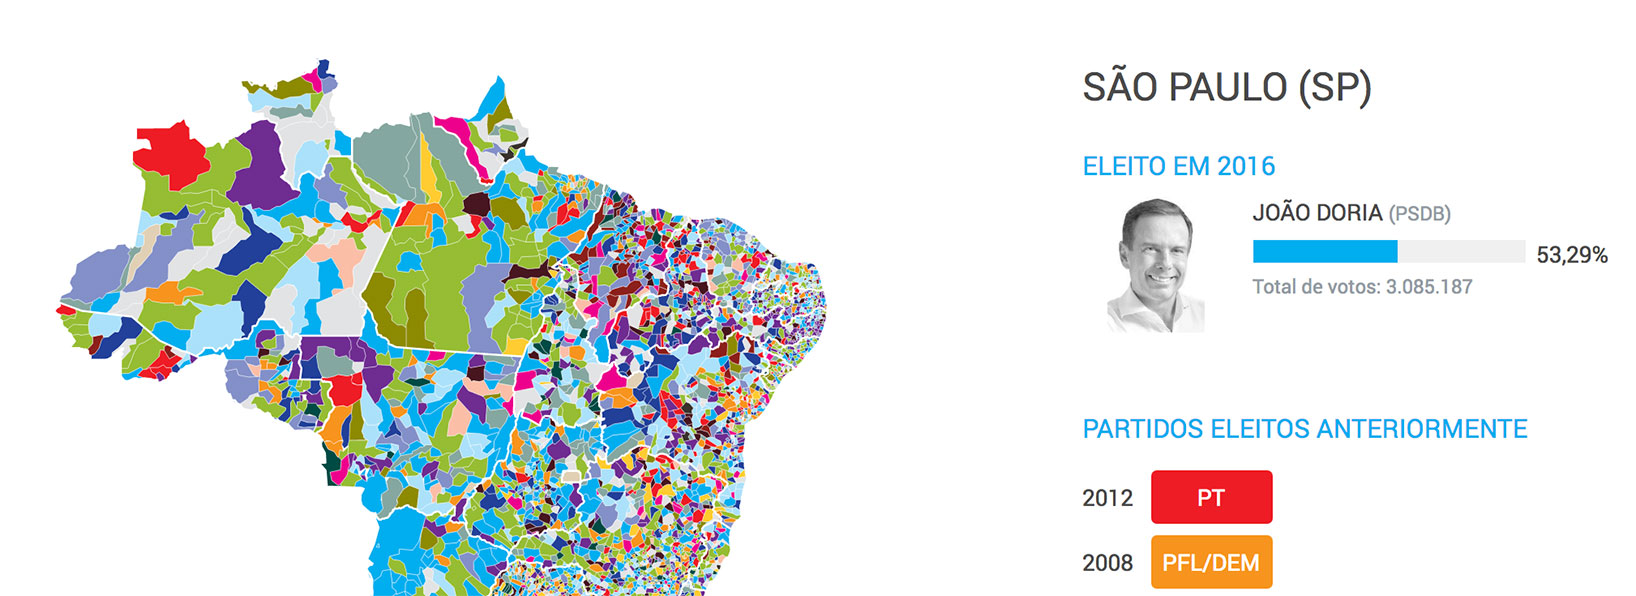 Image of project “Mapa dos partidos nos municípios”